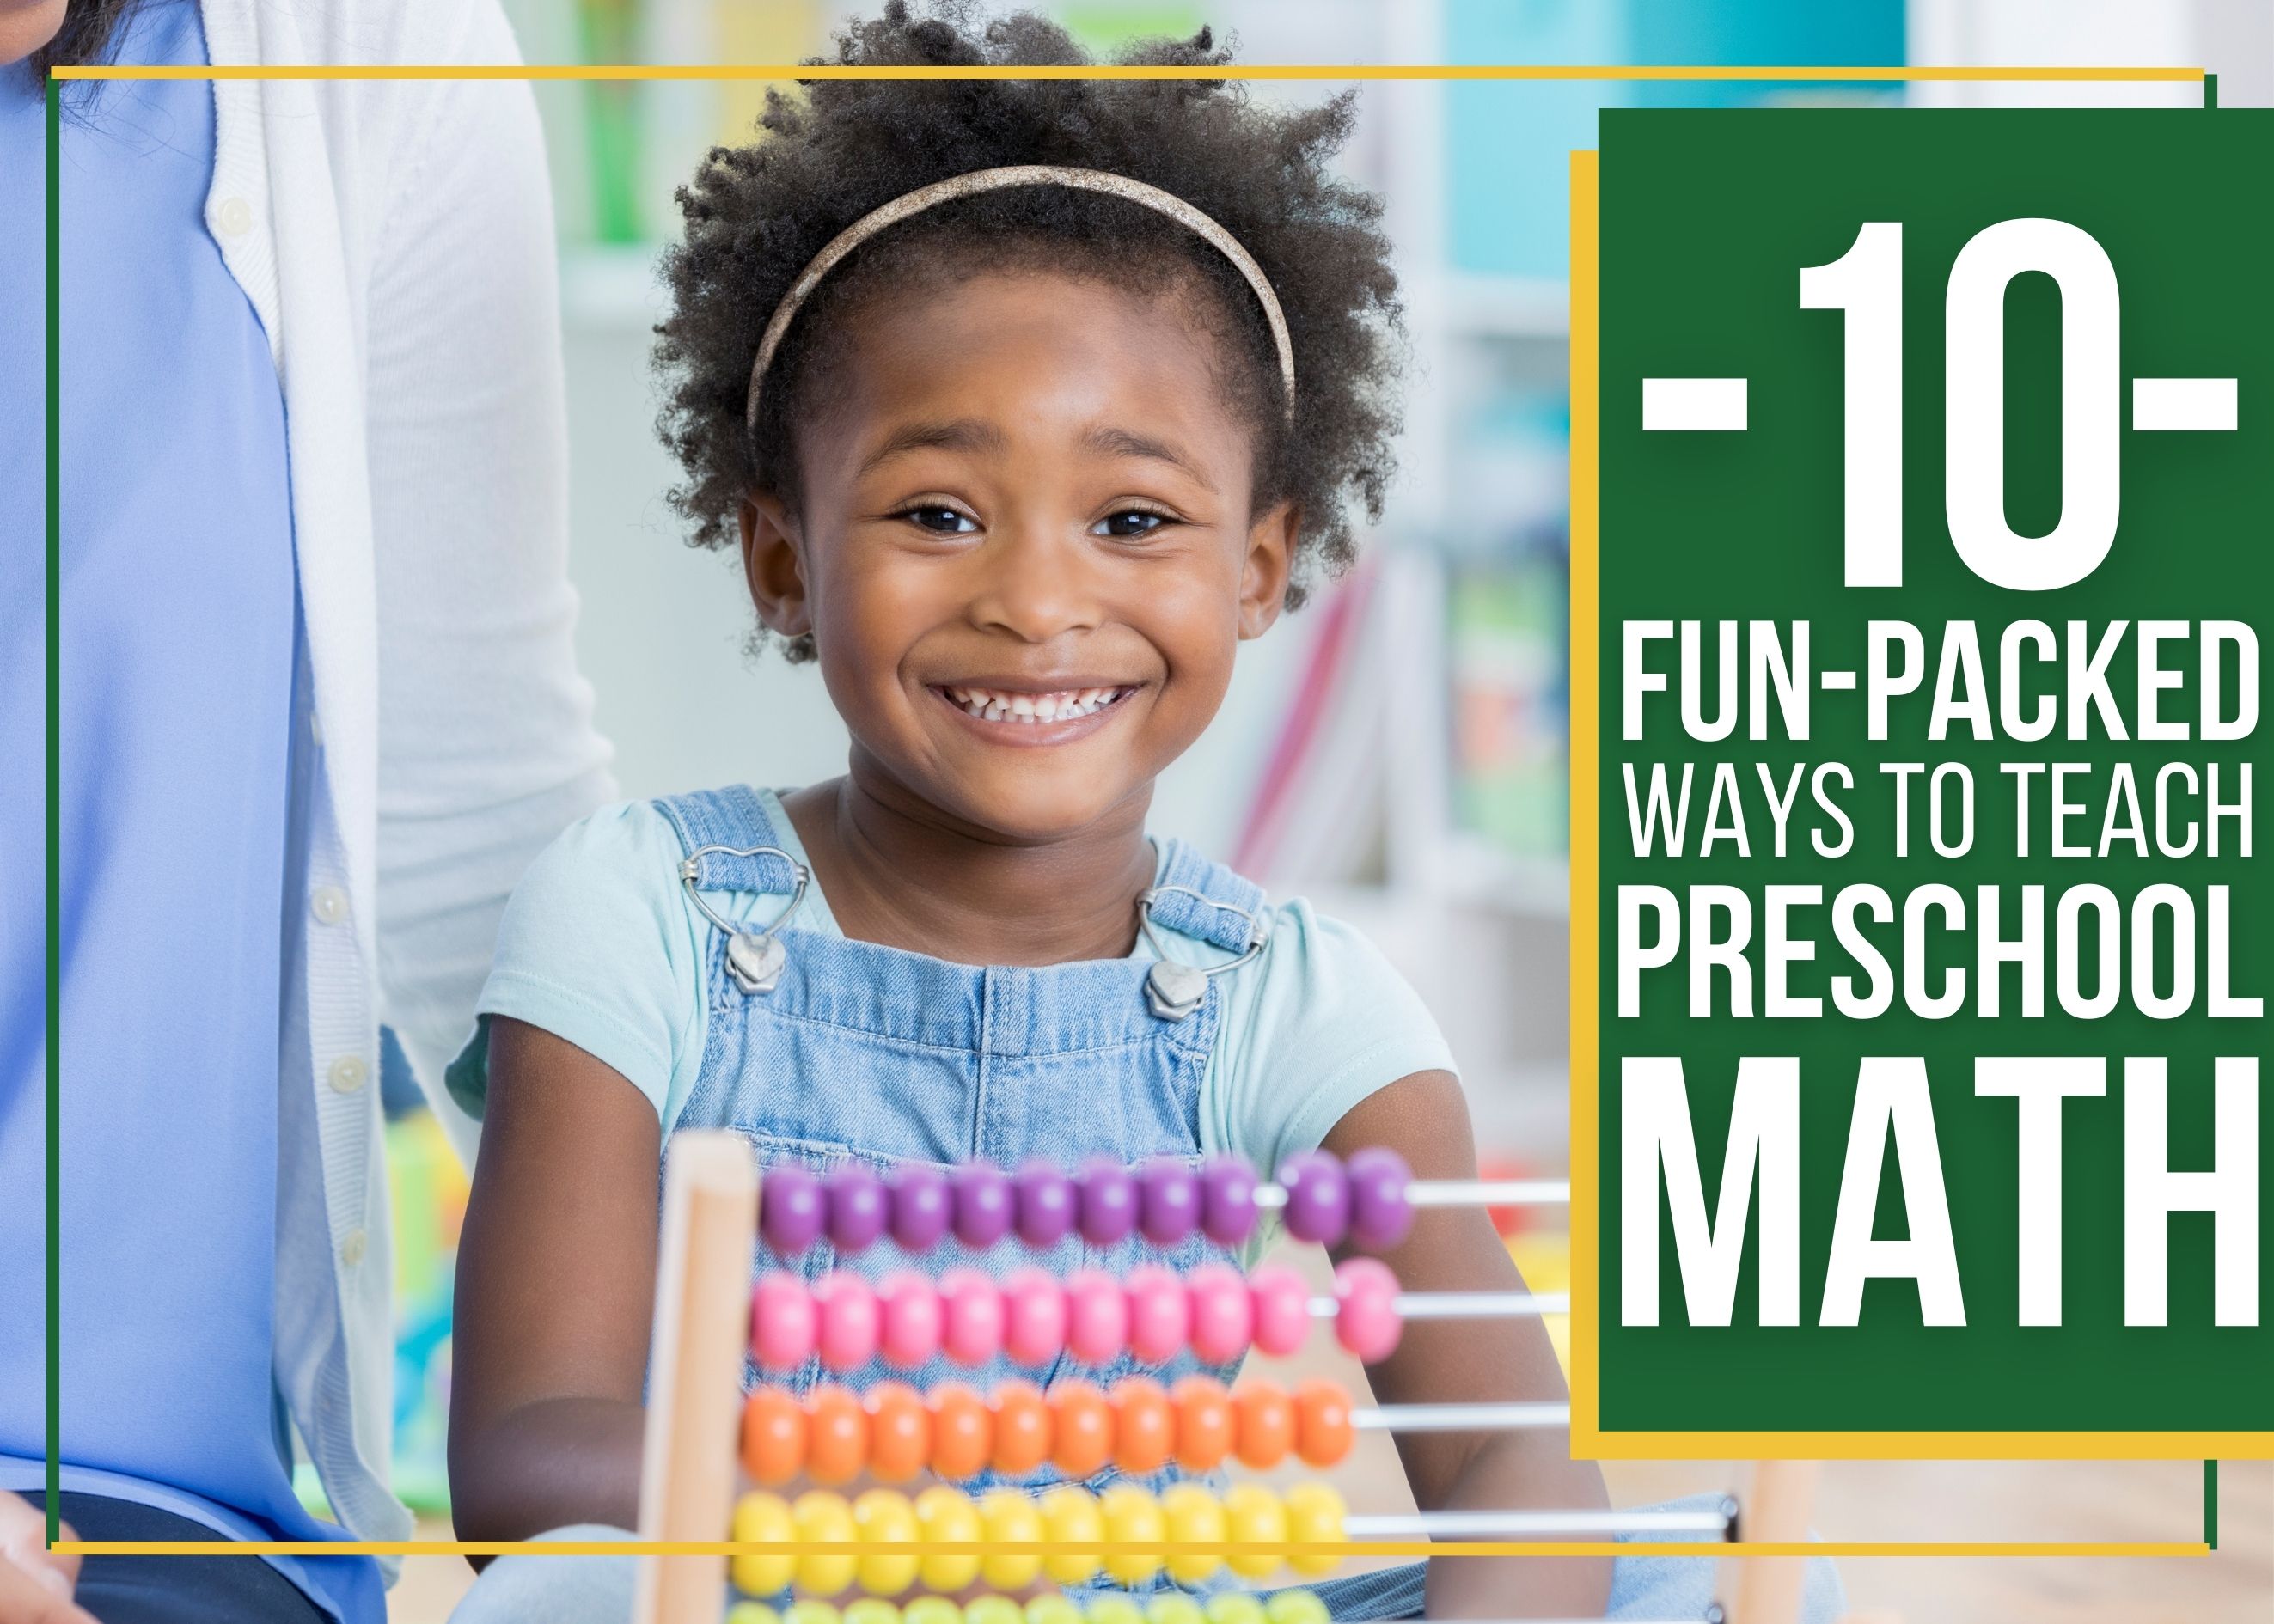 Fun-Packed Ways to Teach Preschool Math